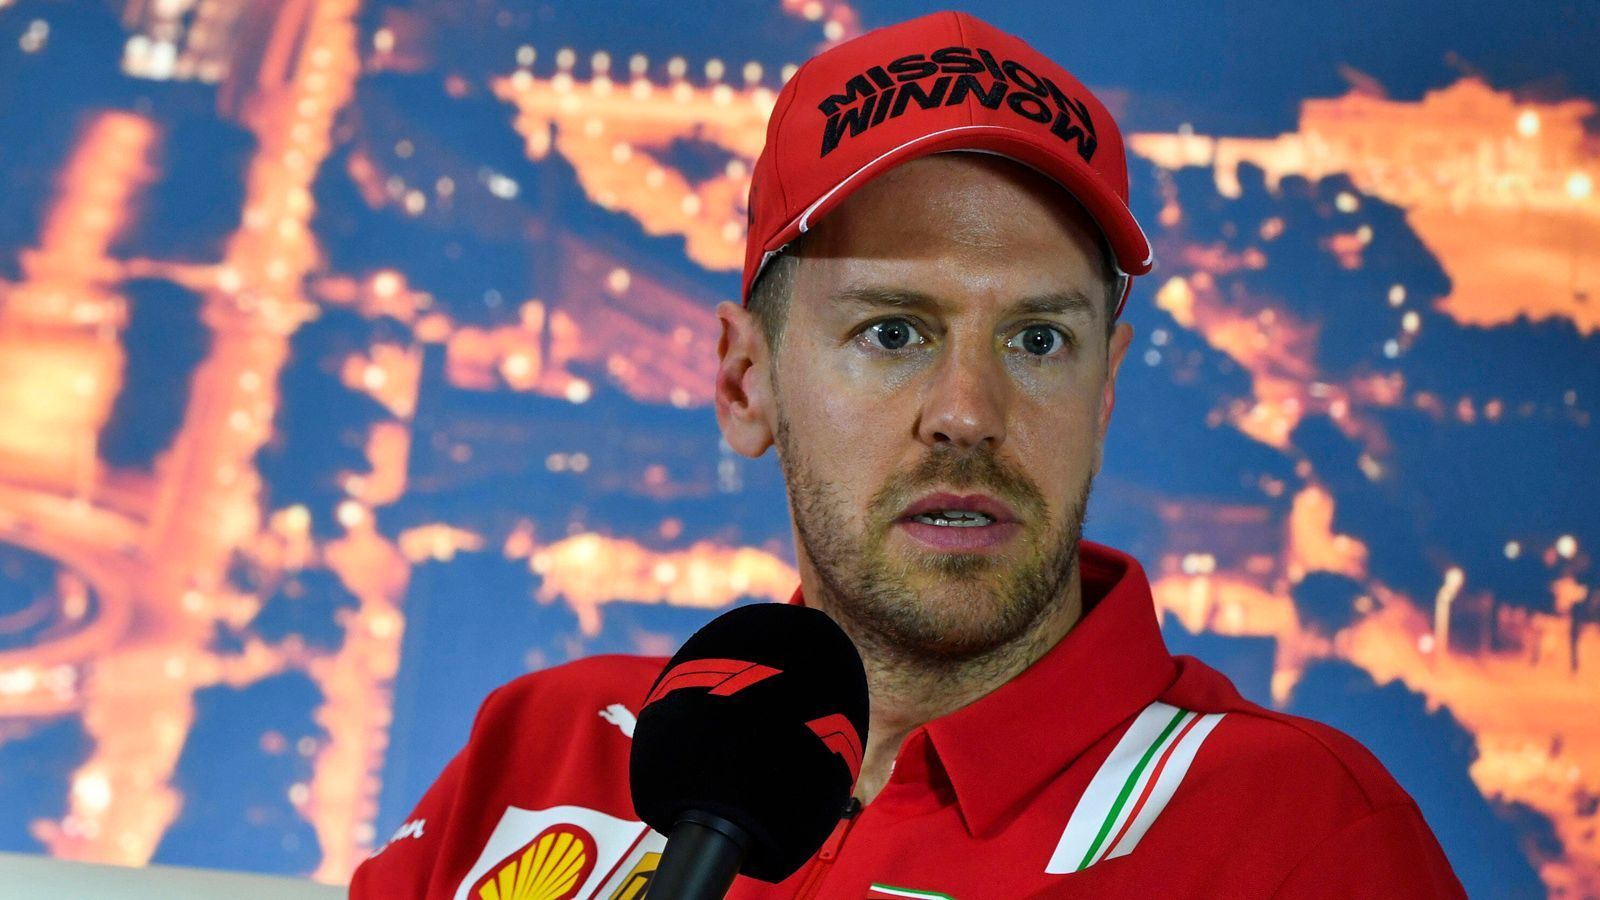 
                <strong>Jahresgehalt: 15 Millionen Euro</strong><br>
                Sebastian Vettel soll bei Aston Martin einen Drei-Jahres-Vertrag unterschreiben und pro Saison 15 Millionen Euro verdienen. Das ist zwar deutlich weniger als bei Ferrari, wo er aktuell noch ein Jahresgehalt von etwa 30 Millionen Euro einstreicht. Dennoch würde Vettel mit seinem neuen Vertrag weiterhin zu den Top-Verdienern der Formel 1 zählen. Noch soll der Vertrag allerdings nicht unterschrieben sein. Kleine Details seien noch zu klären.
              